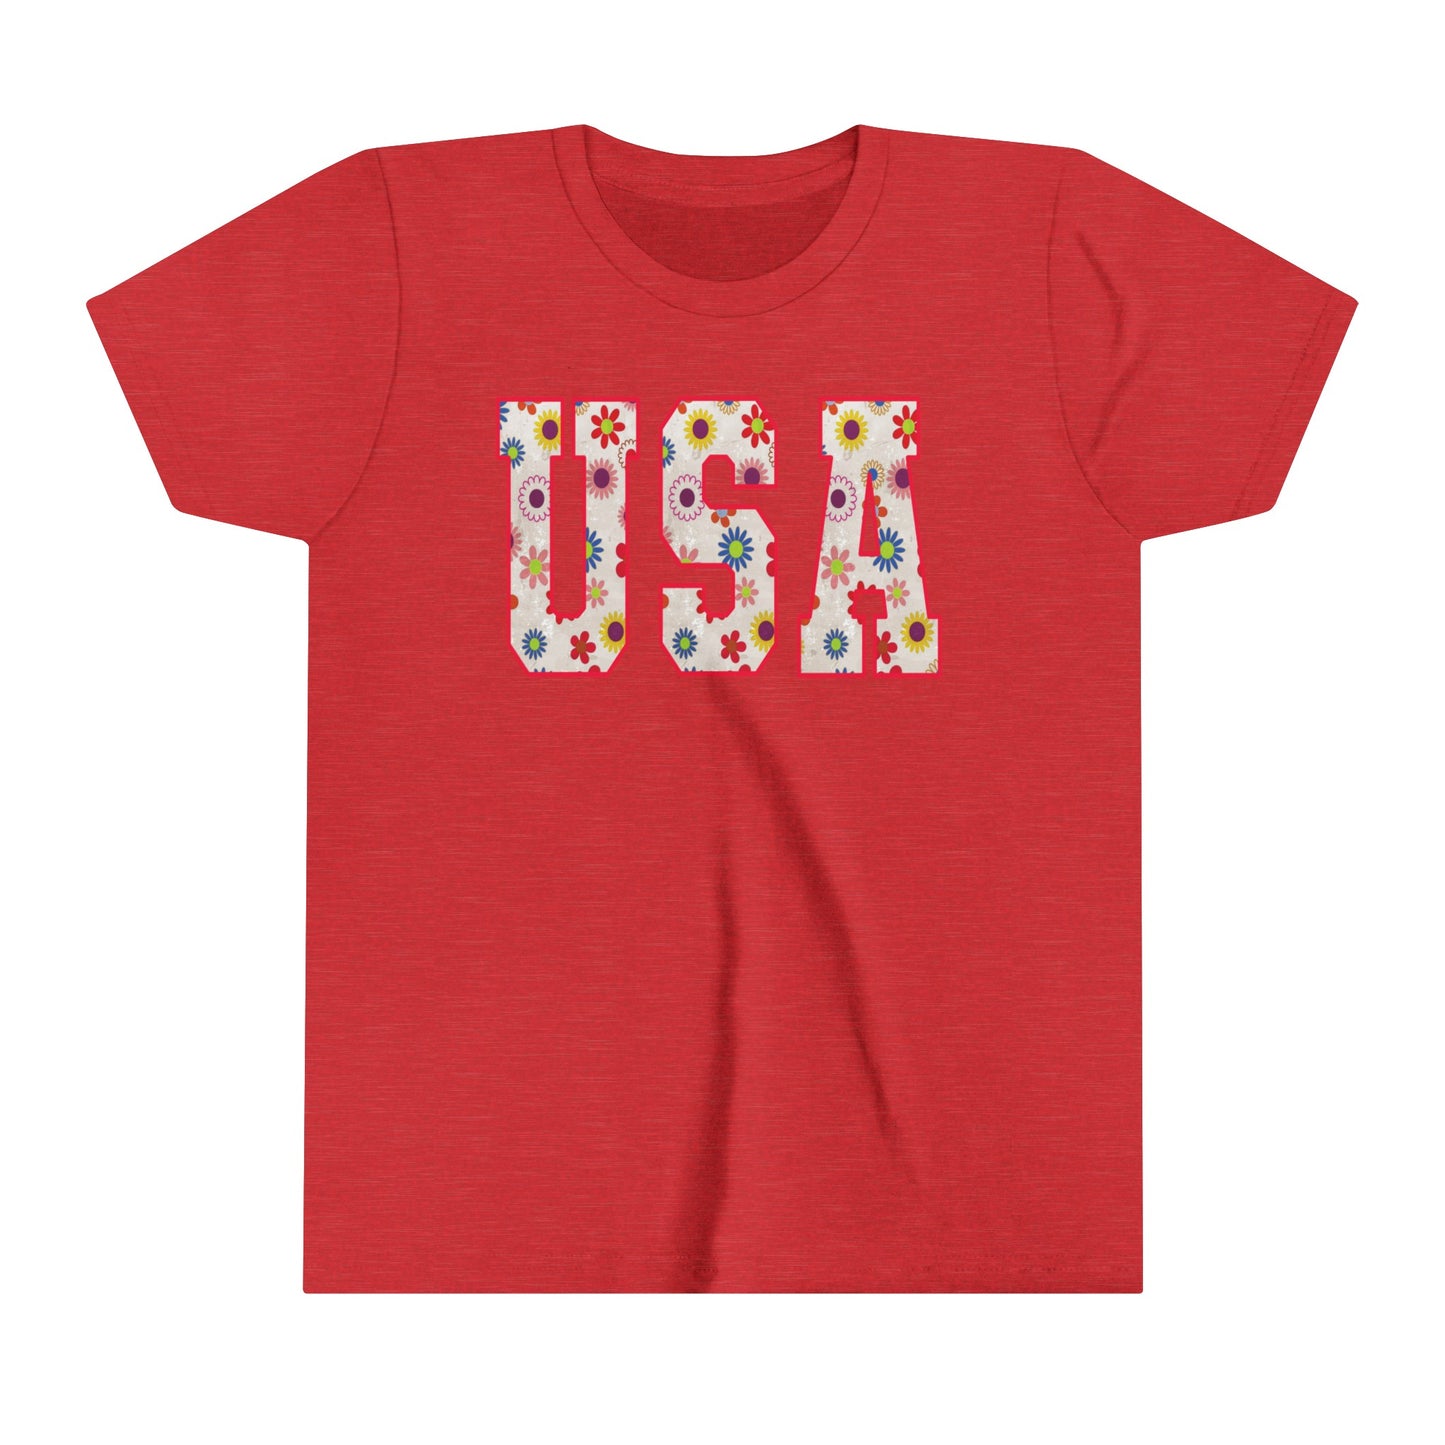 USA 4th of July USA Youth Shirt